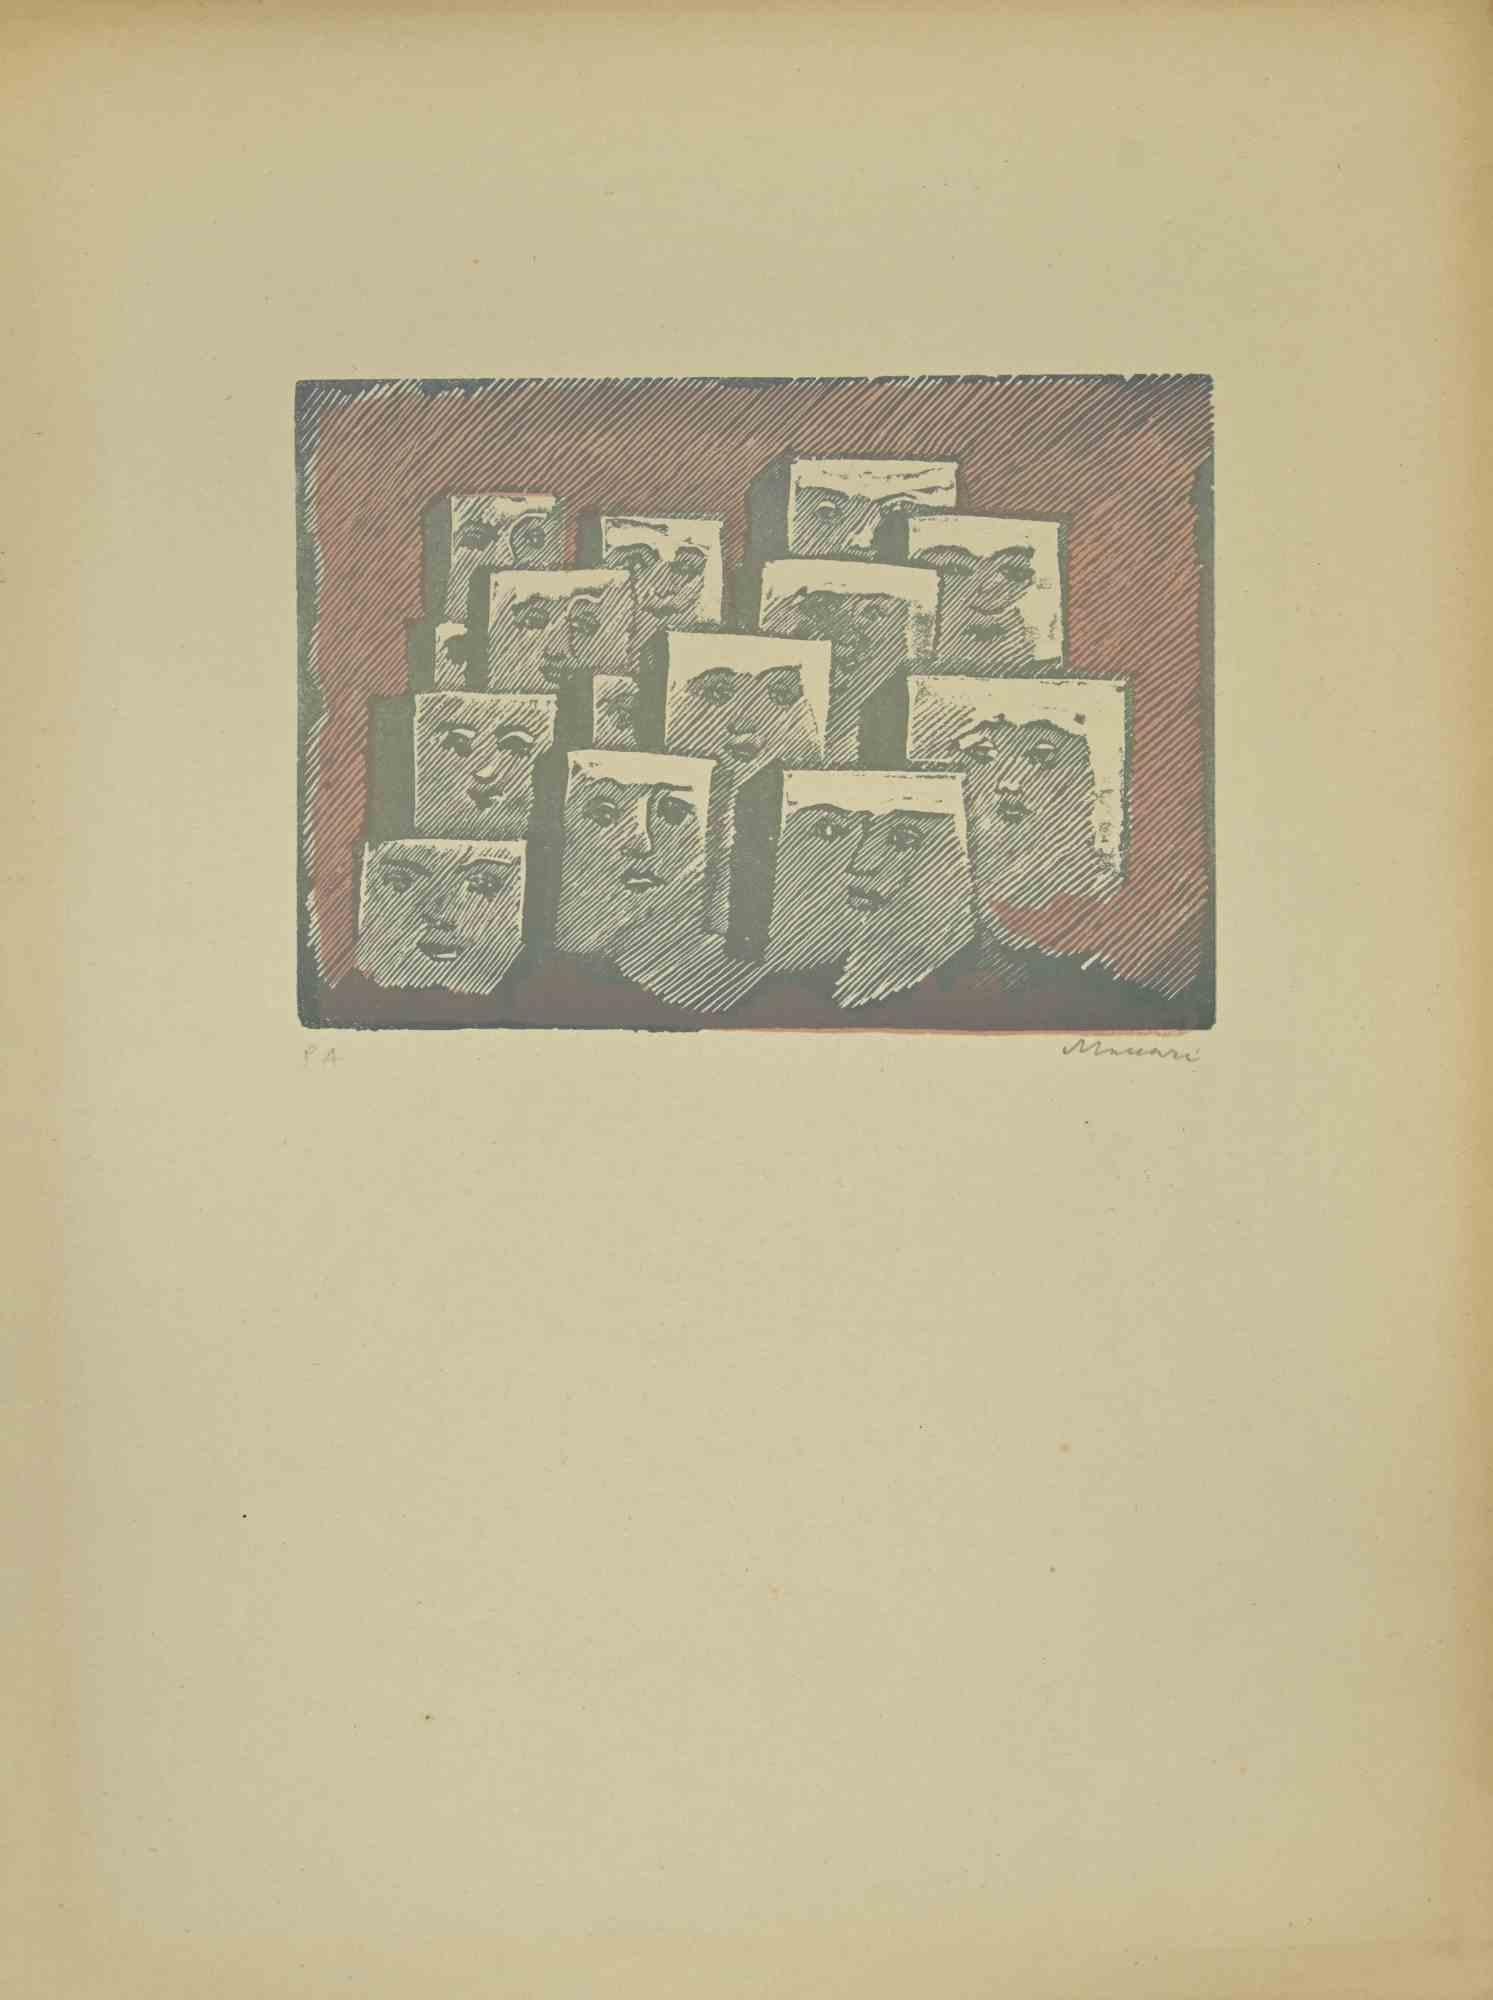 Faces ist ein Linolschnitt realisiert  von Mino Maccari in den 1940er Jahren.

50 x 30 cm.

Handsigniert im unteren rechten Teil. Auflage von 12 Exemplaren.

Referenz; Kat. Meloni , pag 367, n.1741.

Gute Bedingungen.

 

Mino Maccari (Siena,